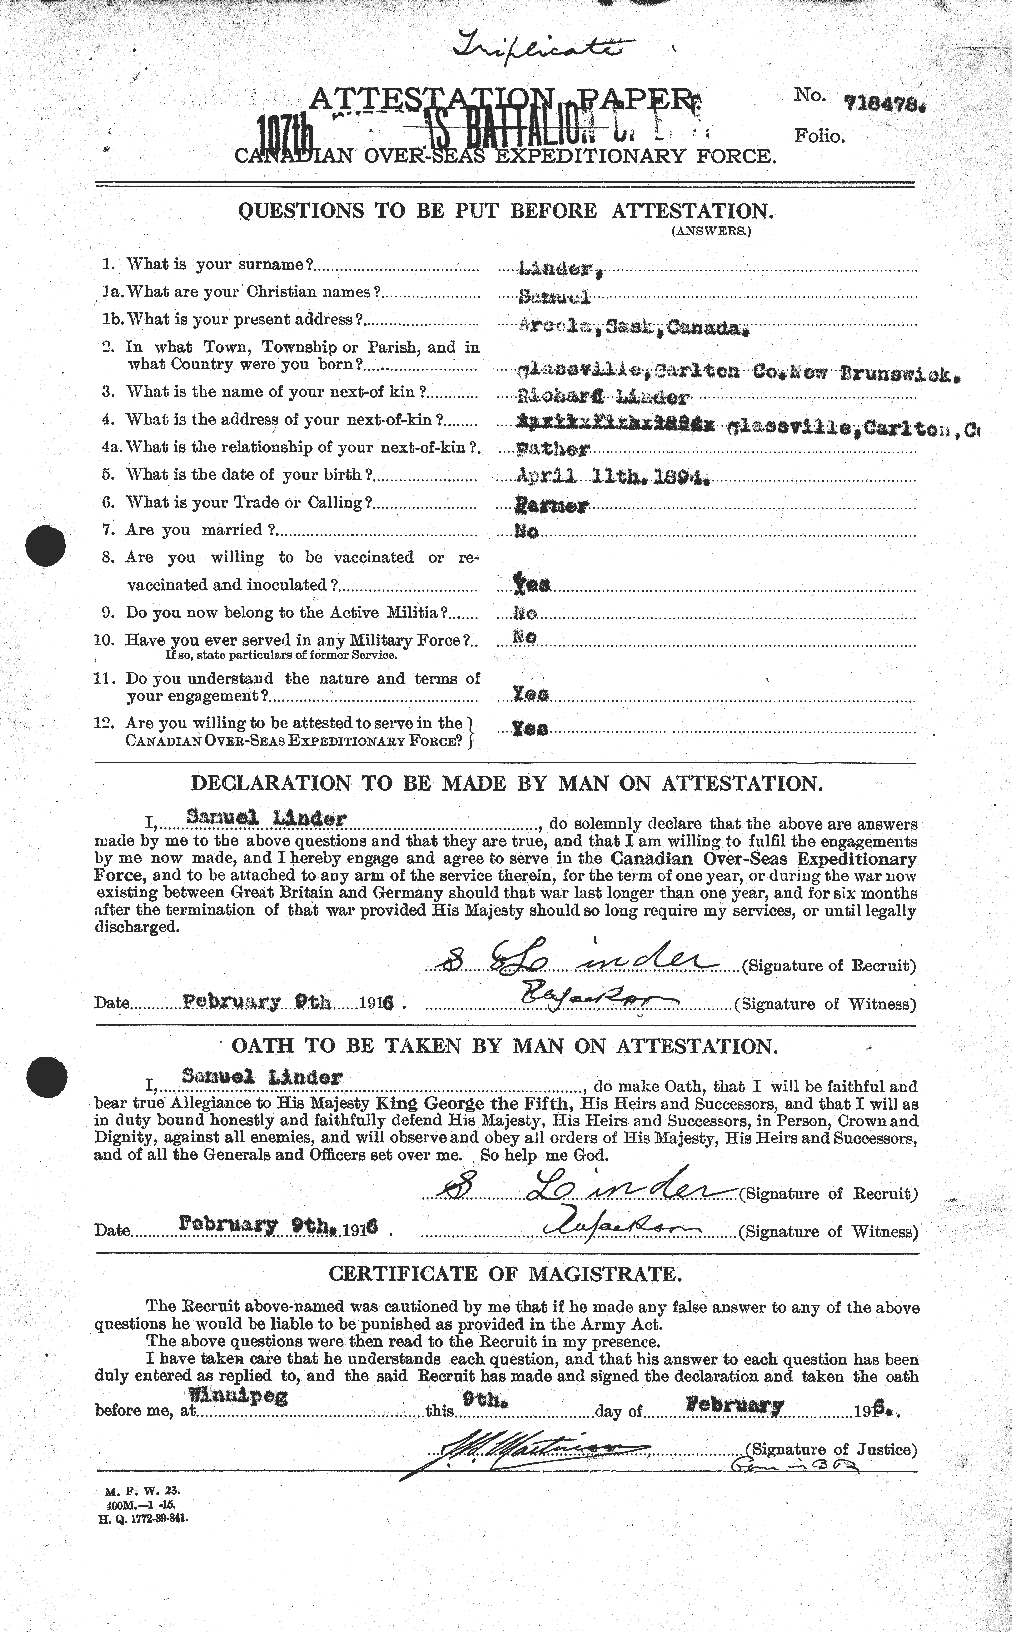 Dossiers du Personnel de la Première Guerre mondiale - CEC 467728a